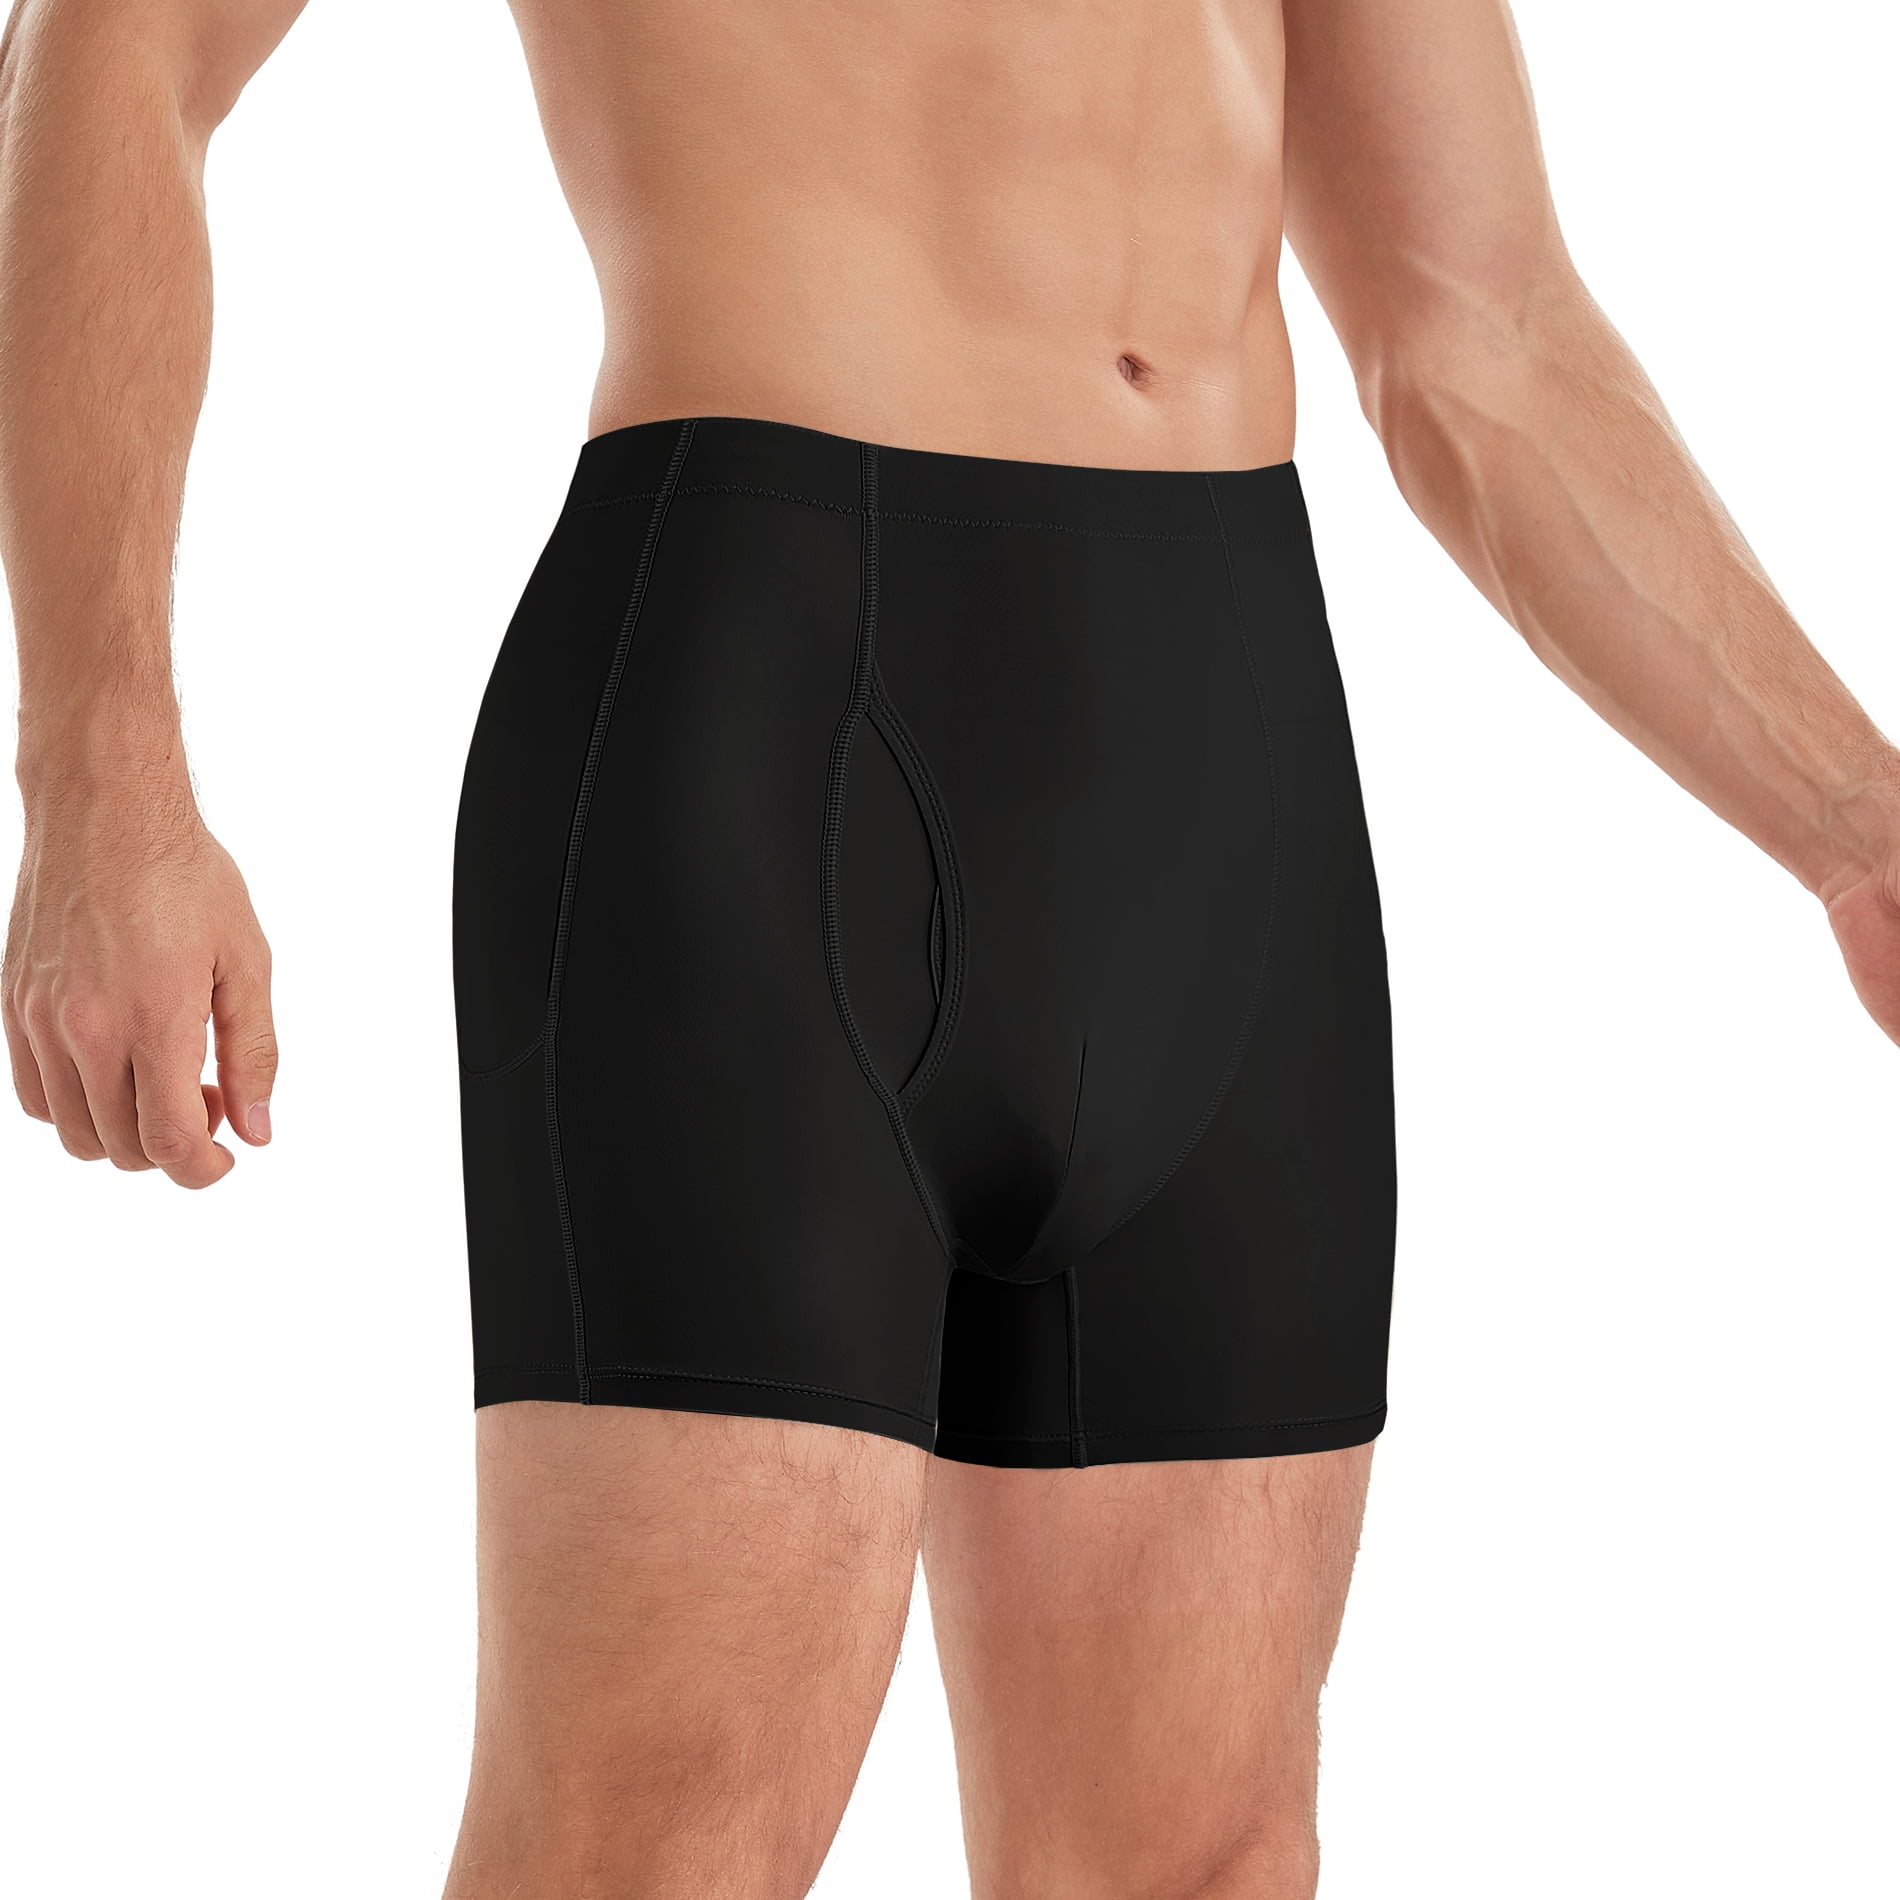 Lenen deur Heel veel goeds Eleady Men's Padded Men's Shapewear Shorts Underwear Boxer Briefs Tummy  Control Body Shaper Enhance Butt Lifter Shapewear with Removable  Padded(Black 3X-Large) - Walmart.com